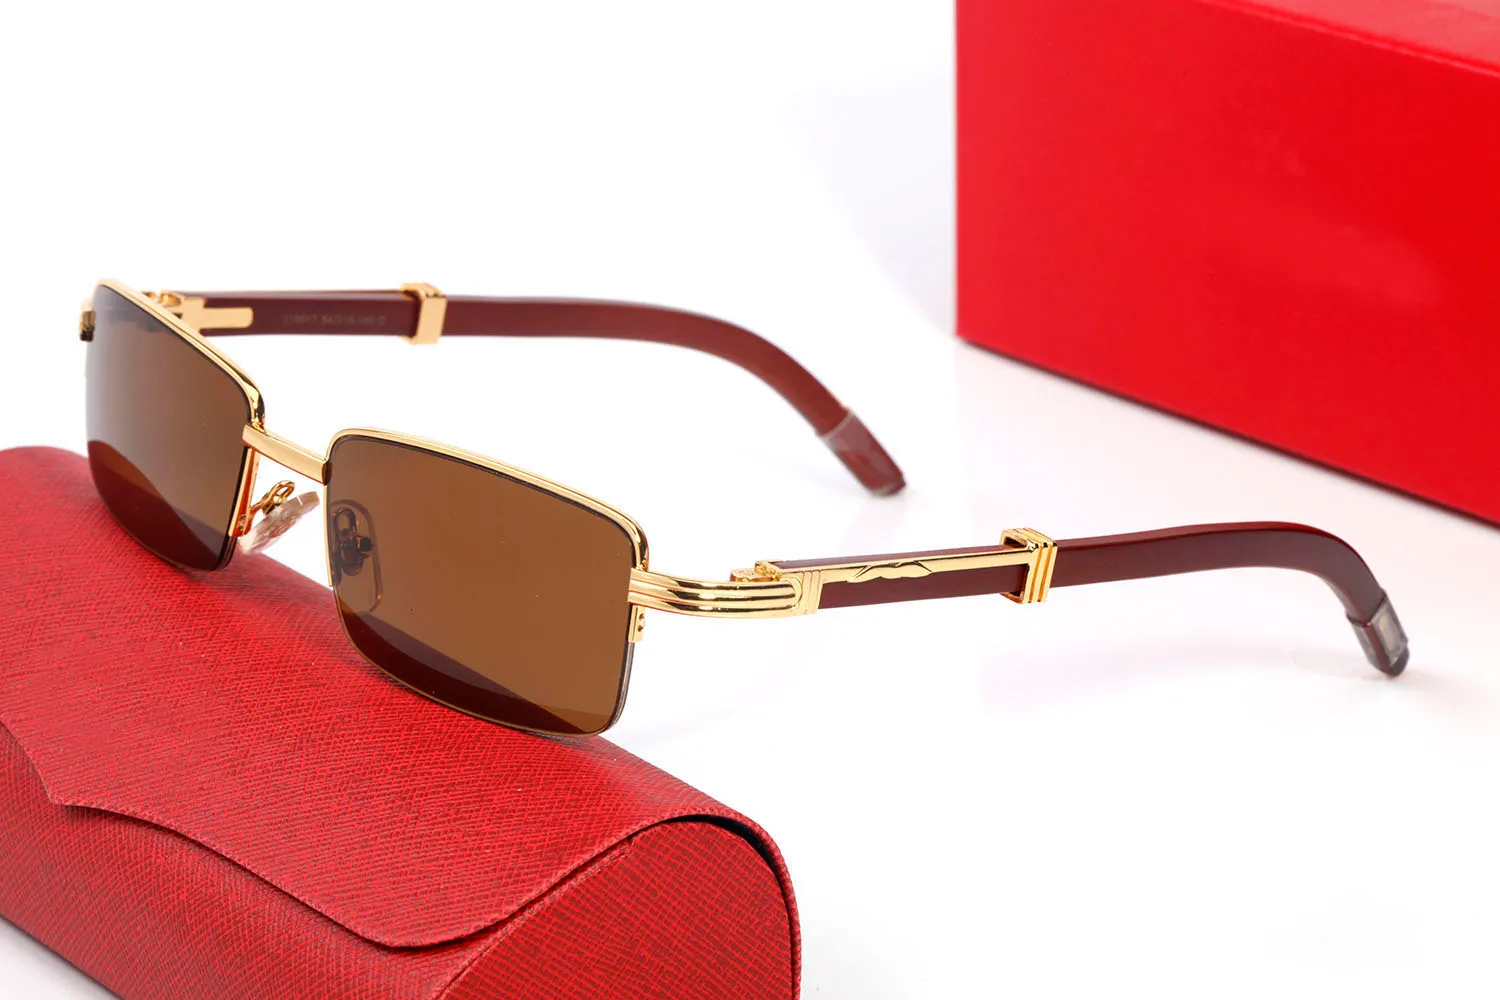 Прямоугольные солнцезащитные очки для женщин металлические и деревянные бамбуковые рамки дизайн бренд солнце